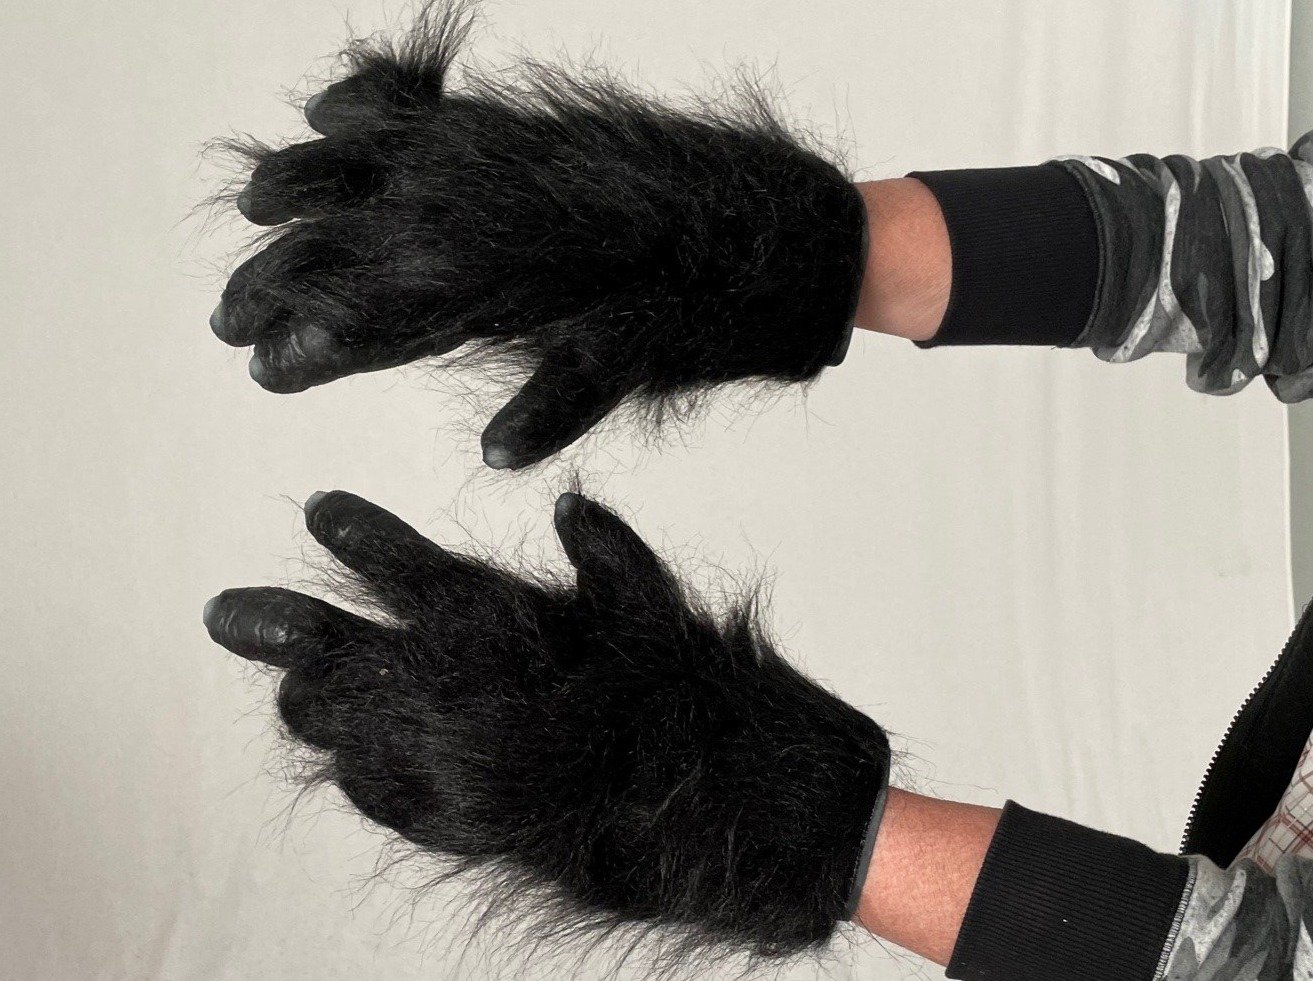 Gothic Chic Gorilla Hand Gloves